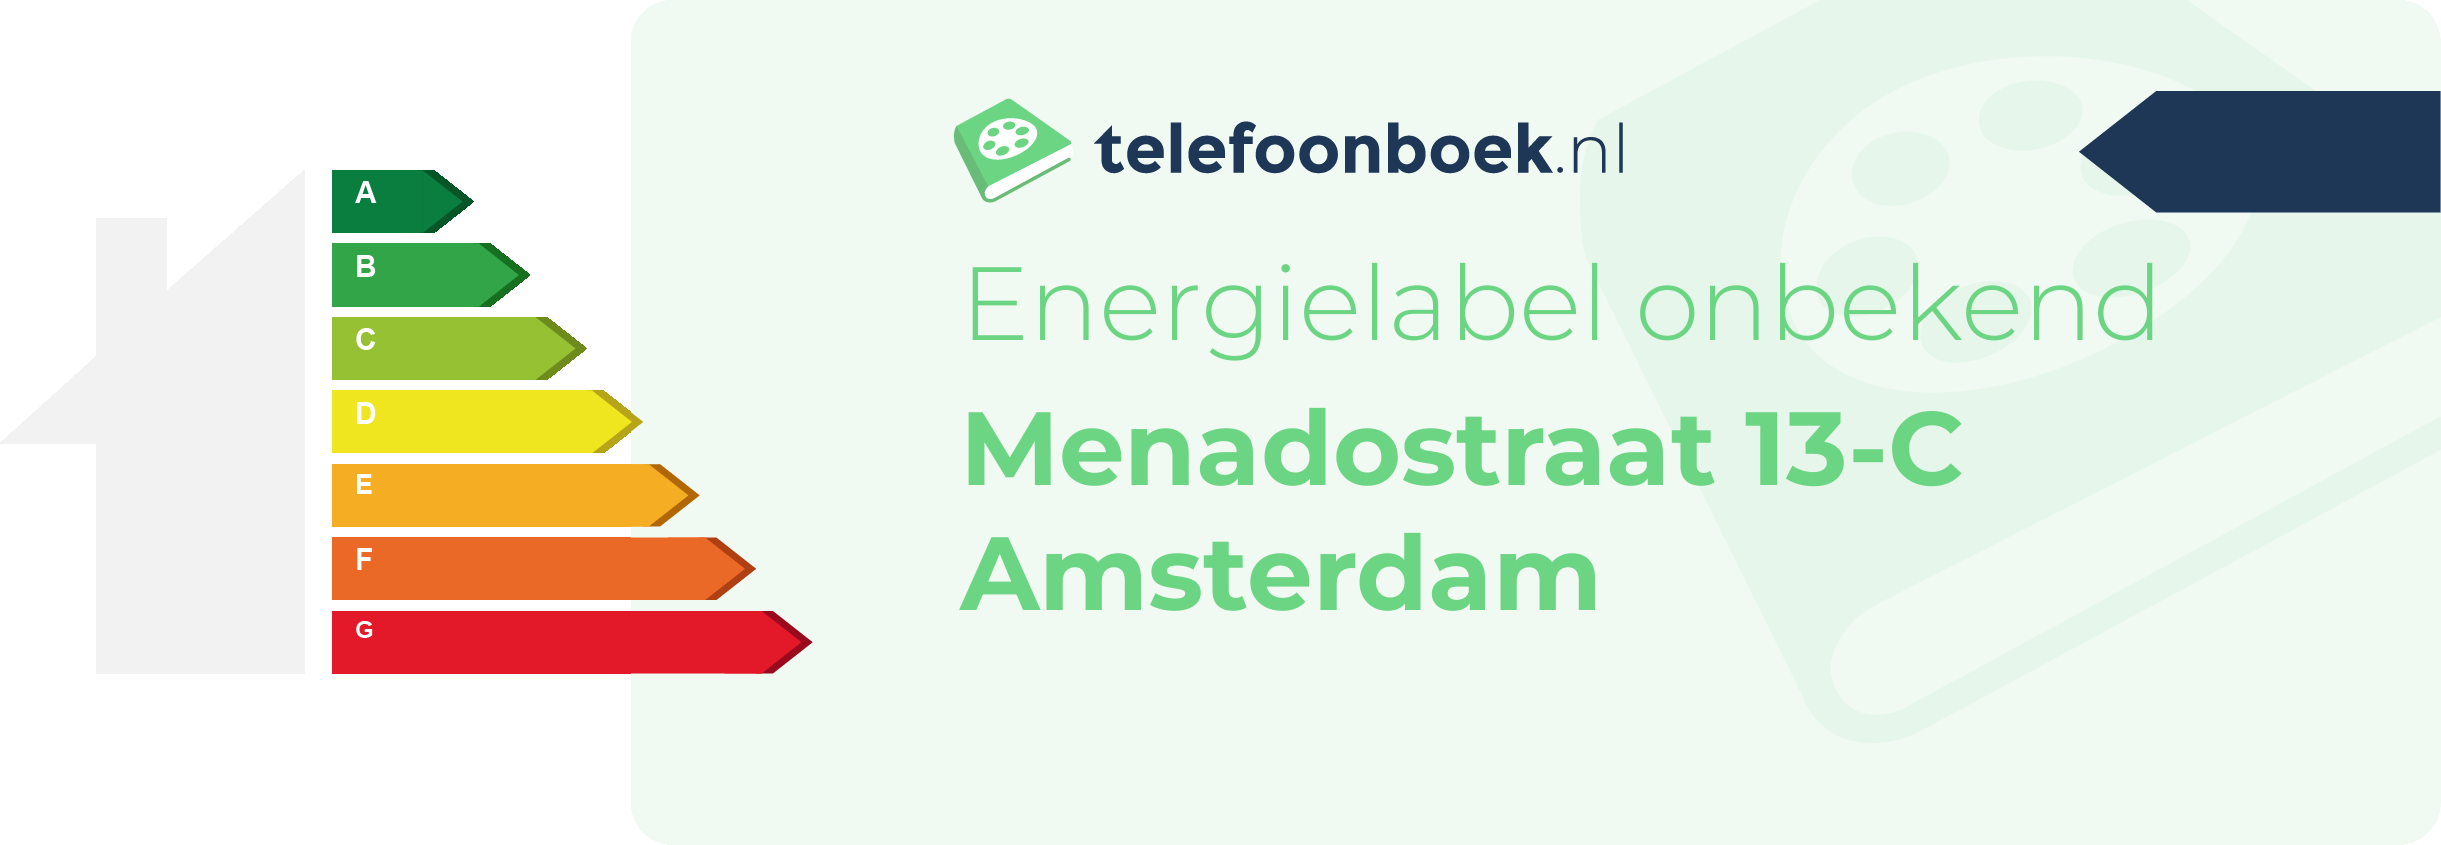 Energielabel Menadostraat 13-C Amsterdam